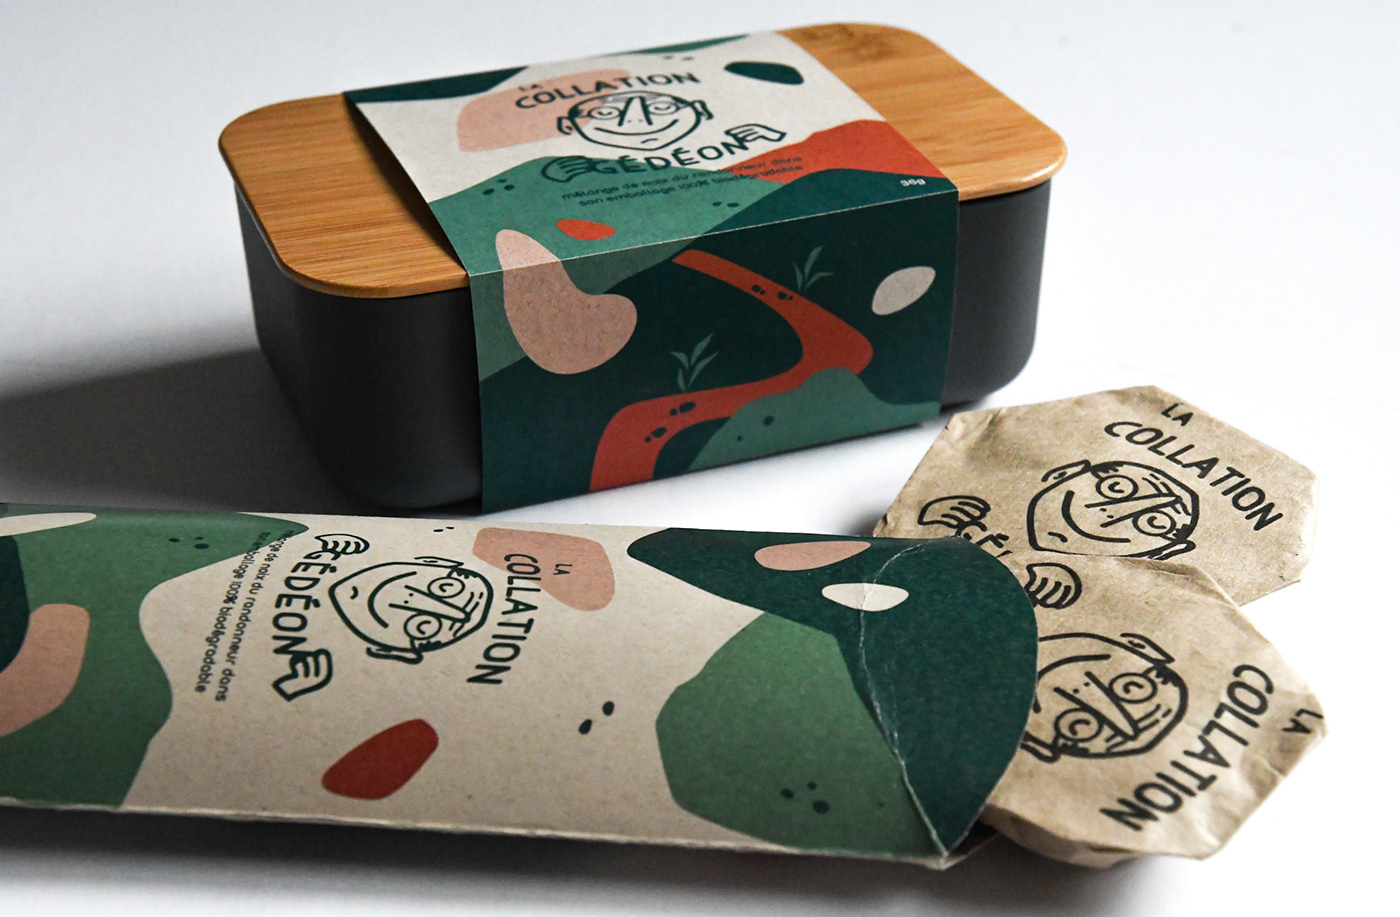 Packaging example #593: Branding & Packaging - Snack Box